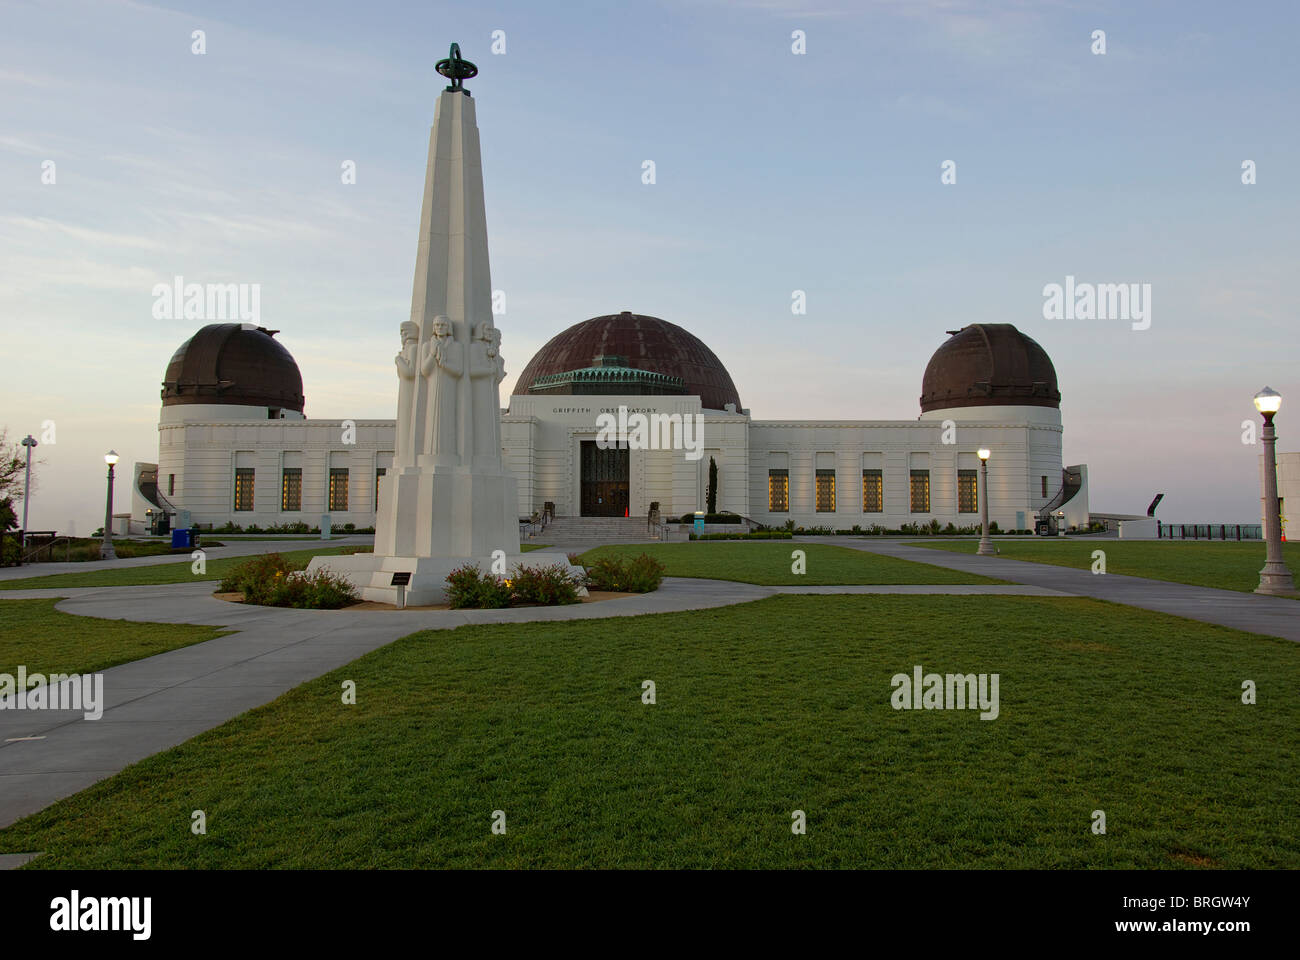 Griffith Park Observatory dans le comté de Los Angeles, en Californie. Cet endroit est une destination populaire pour les touristes. Banque D'Images